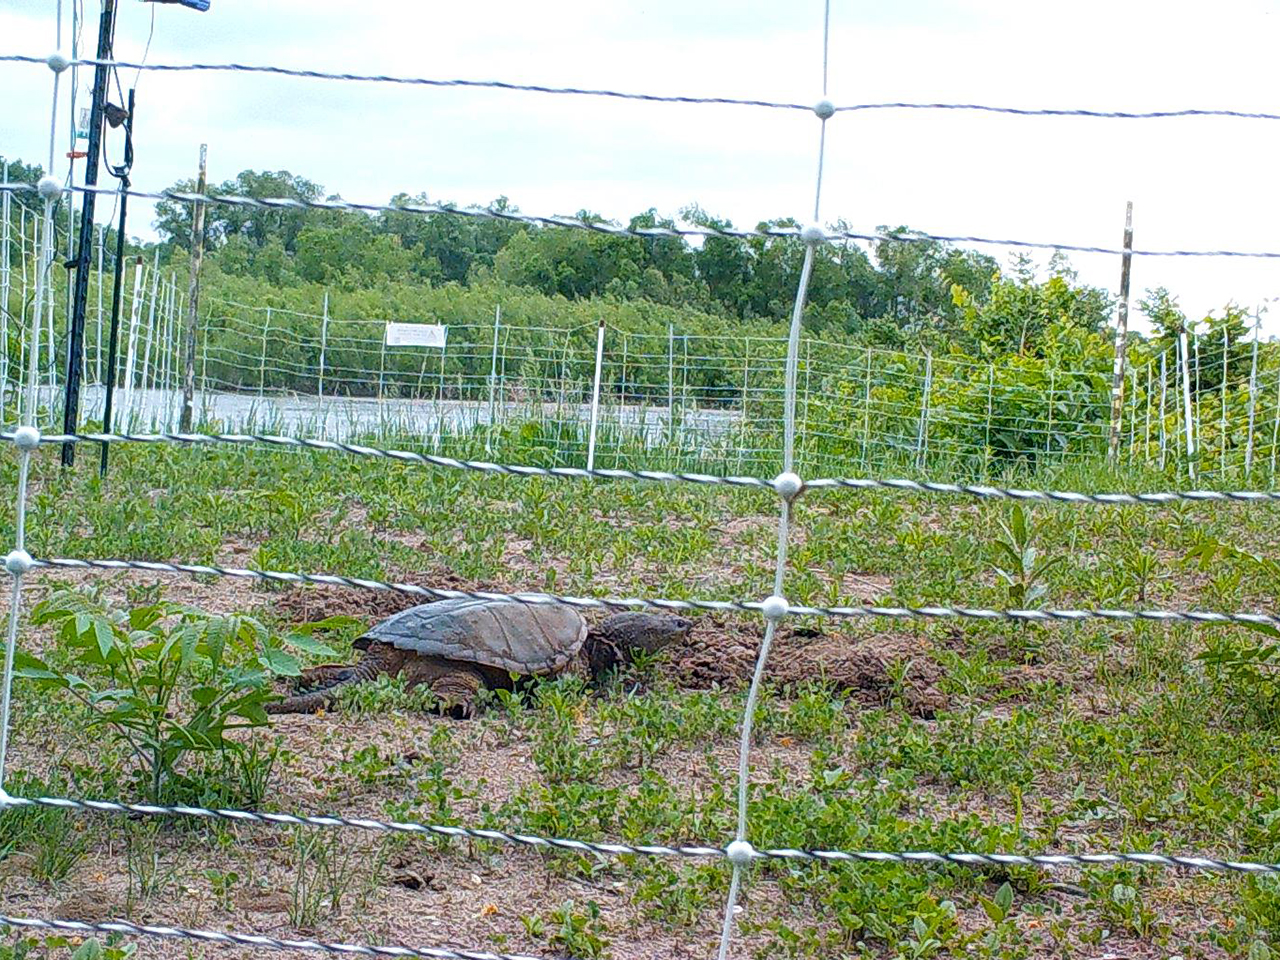 Turtle in turtle nest enclosure